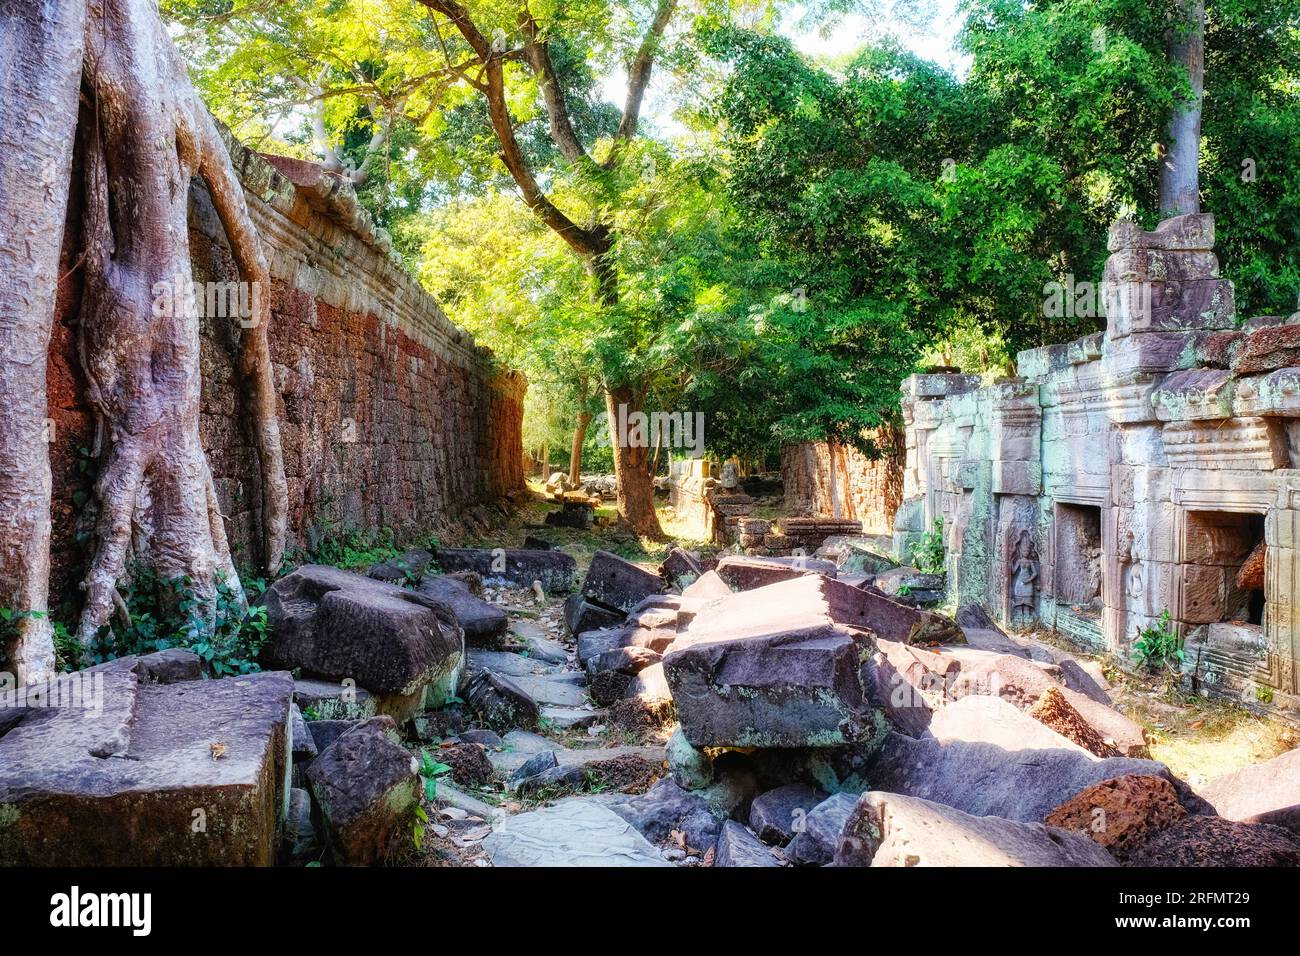 Svelare il passato: Rovine di antiche strutture nelle foreste cambogiane, la città perduta di Angkor. Foto Stock